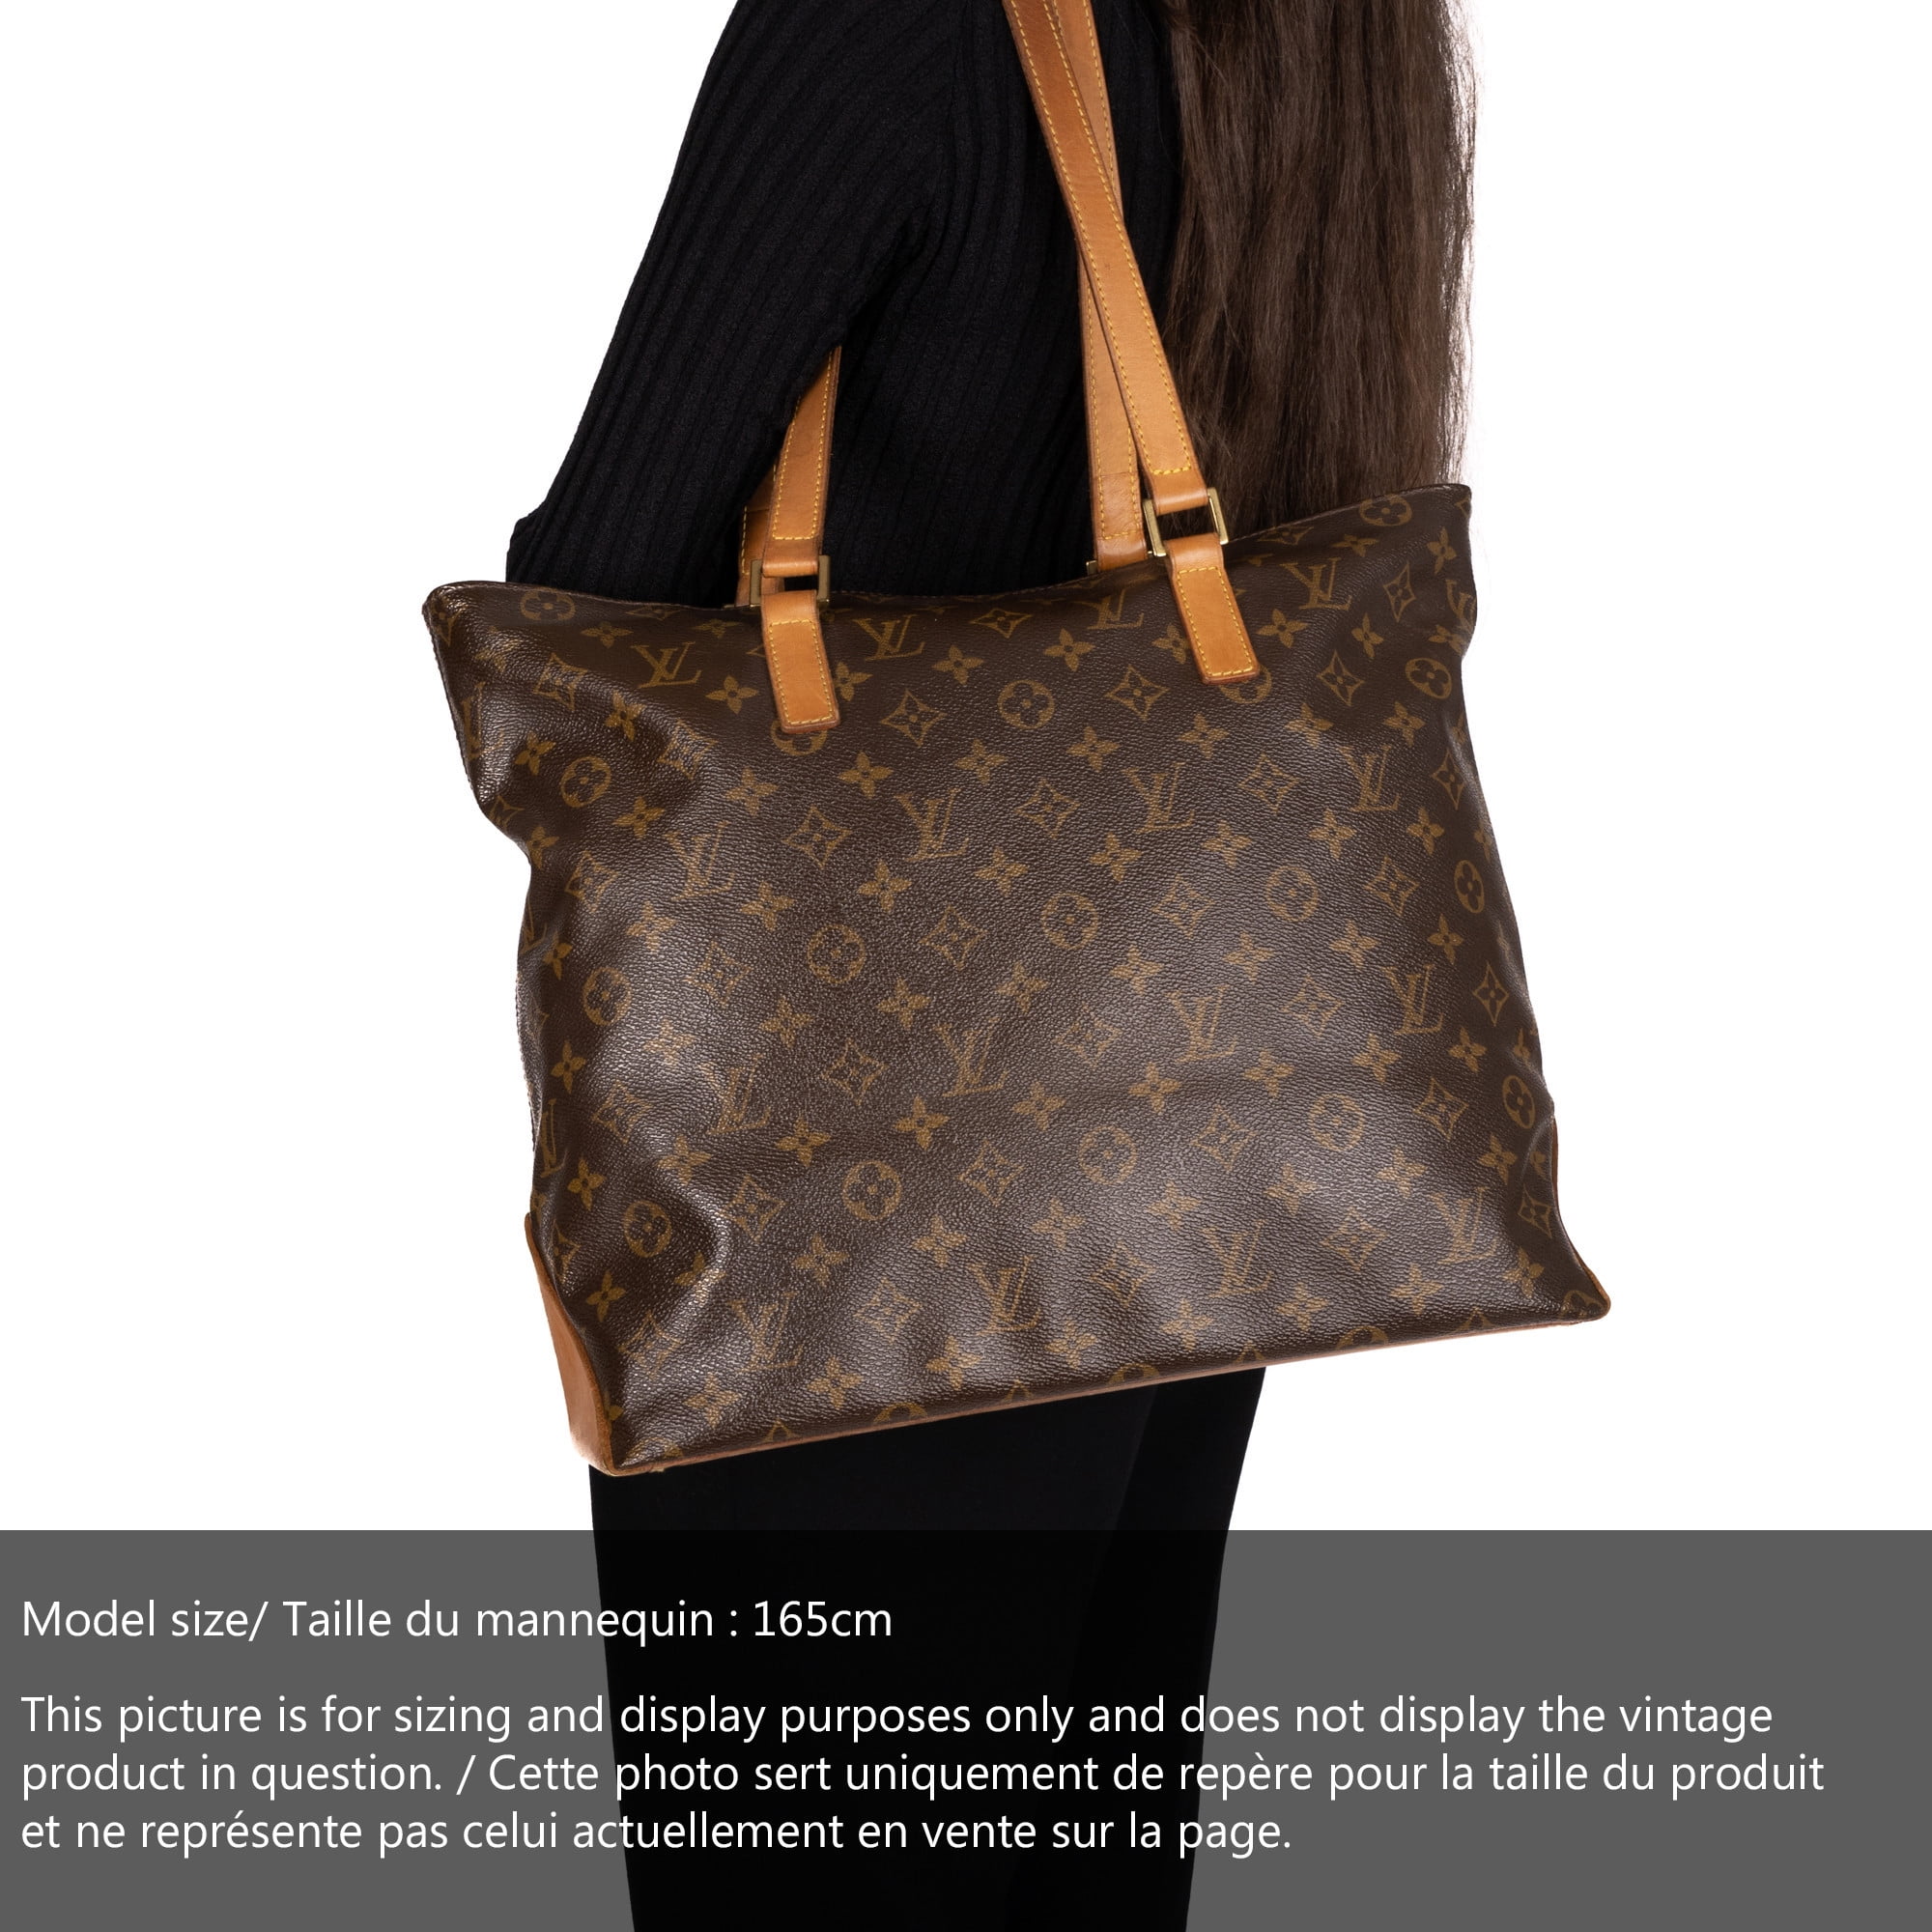 Pre-Owned Louis Vuitton Cabas Mezzo Bag 213296/142